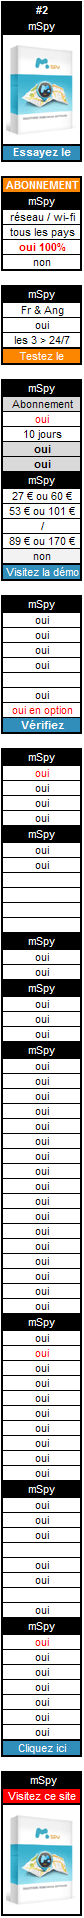 Logiciel de surveillance mSpy